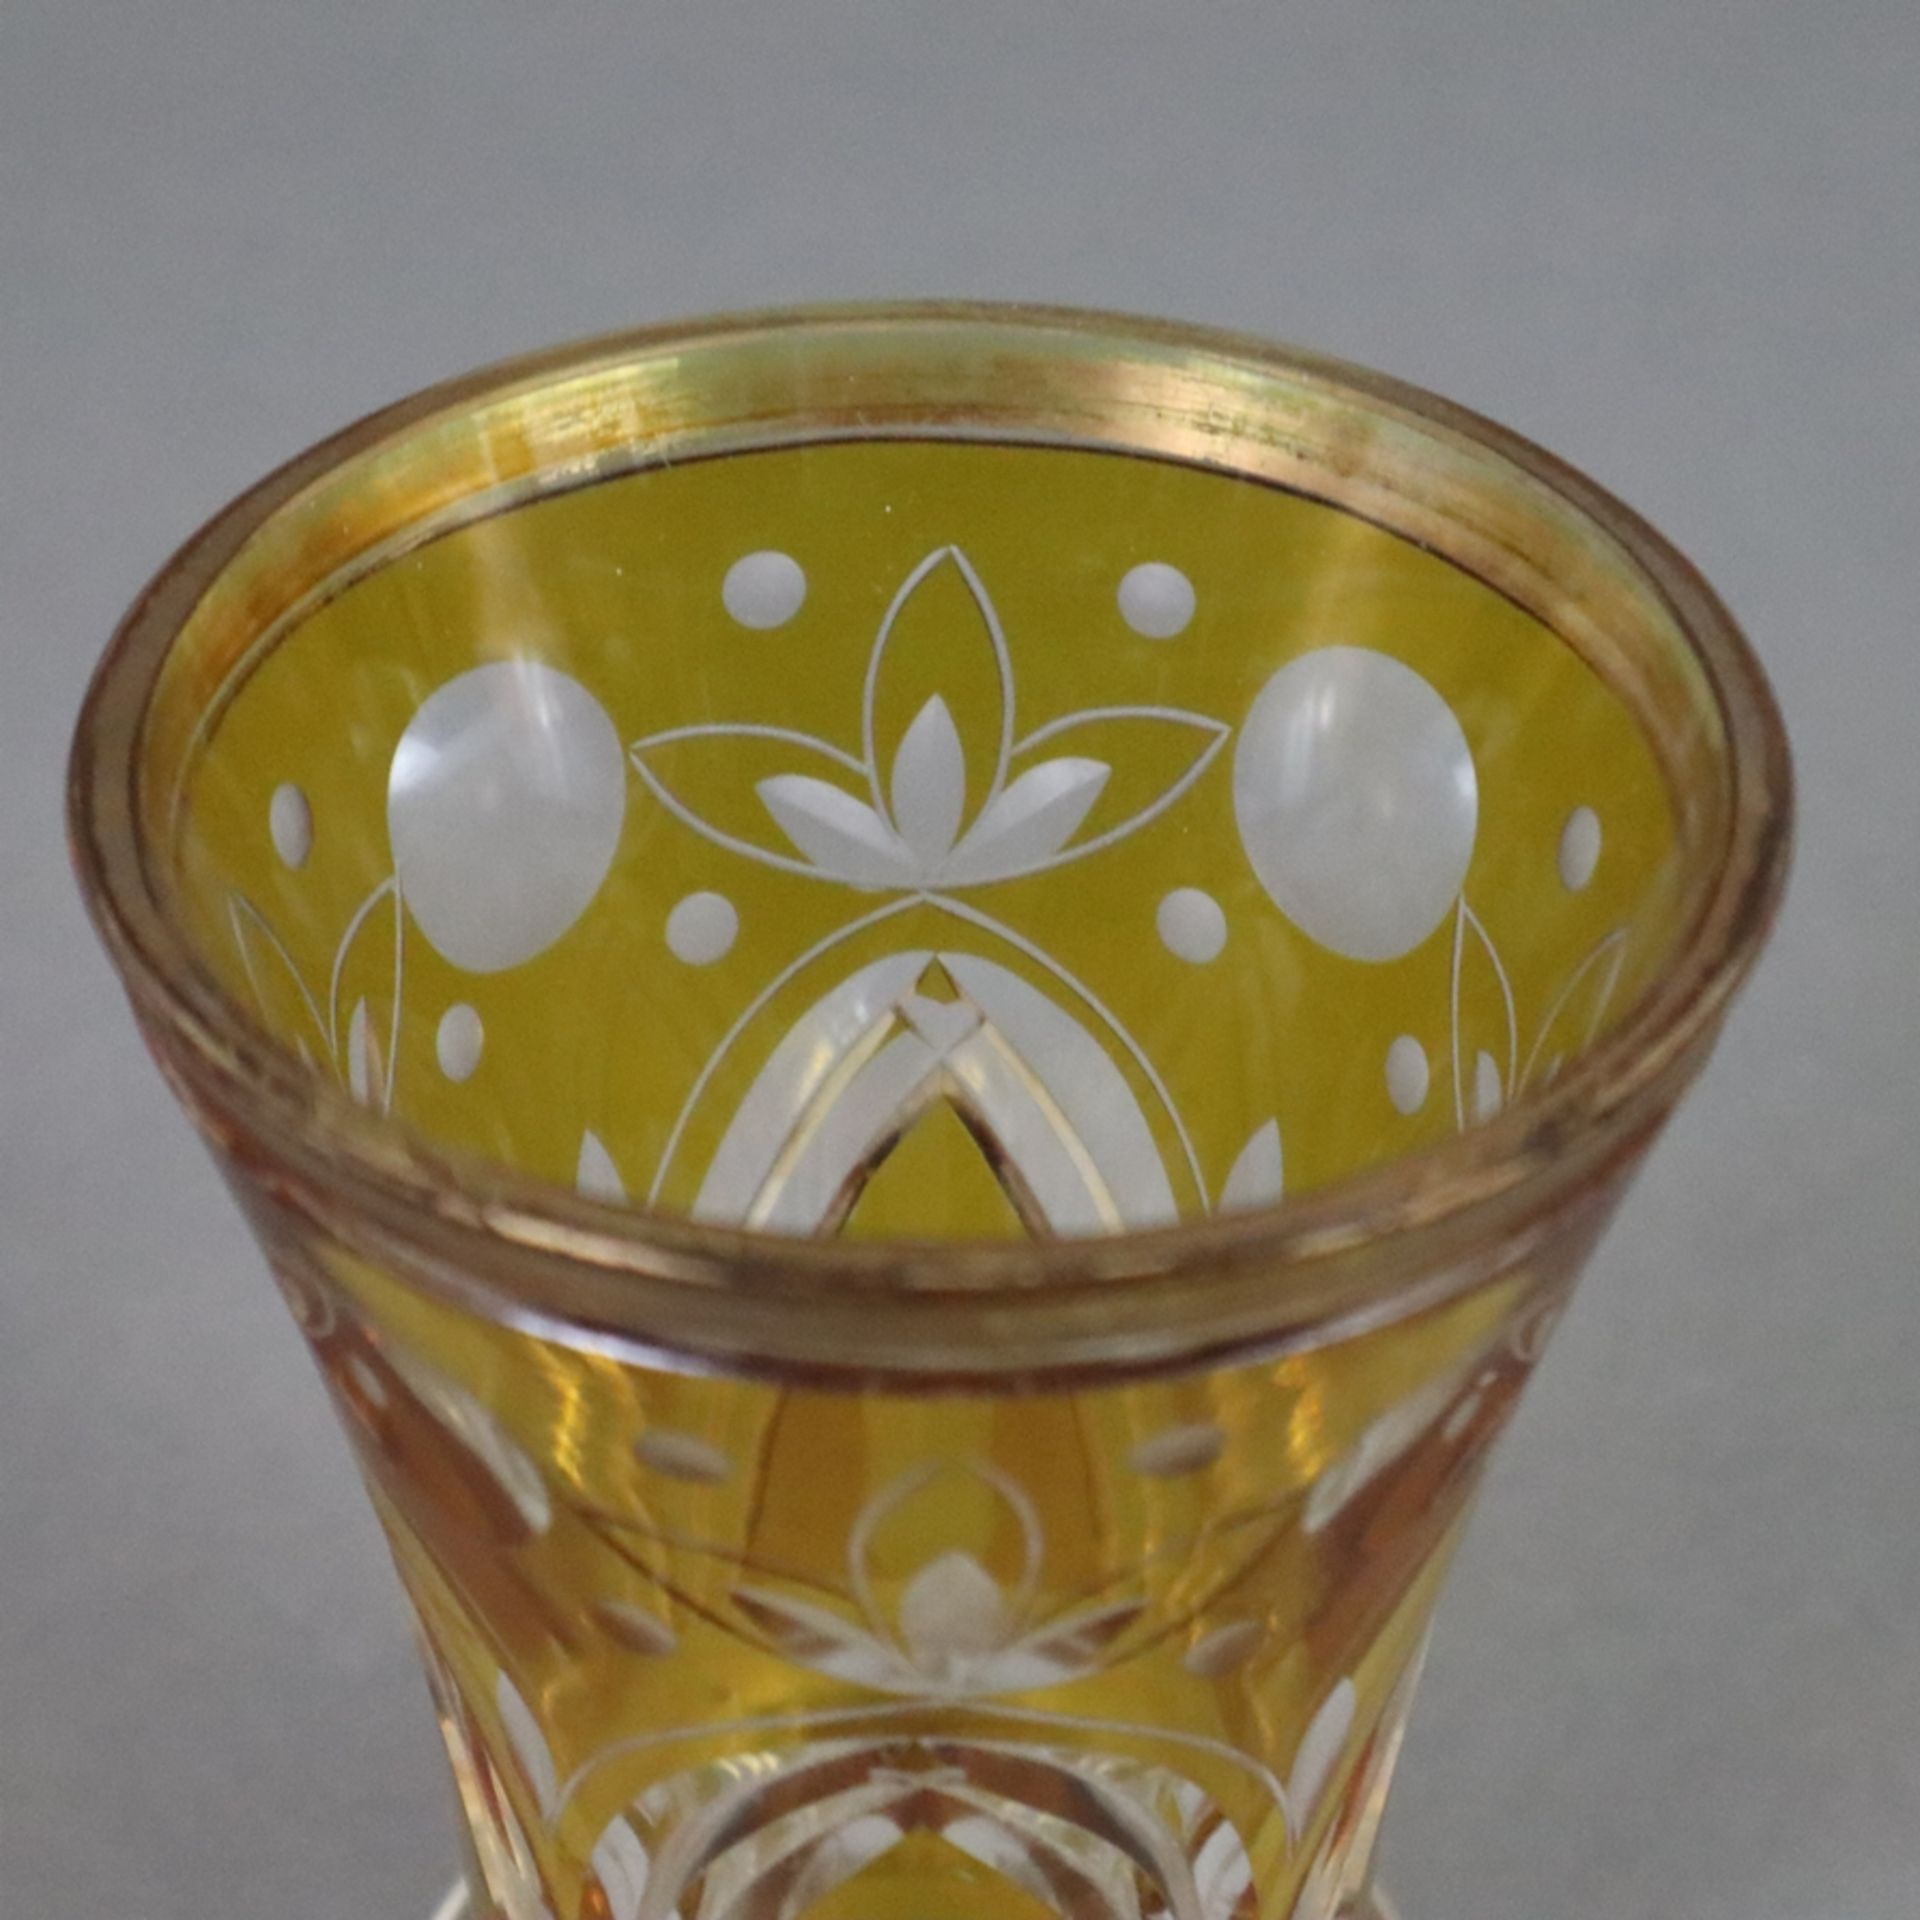 Ranftbecher - Böhmen, 19.Jh., farbloses Glas, mit Schnitt- und Schliffdekor, gelb lasiert, Goldstaf - Image 2 of 6